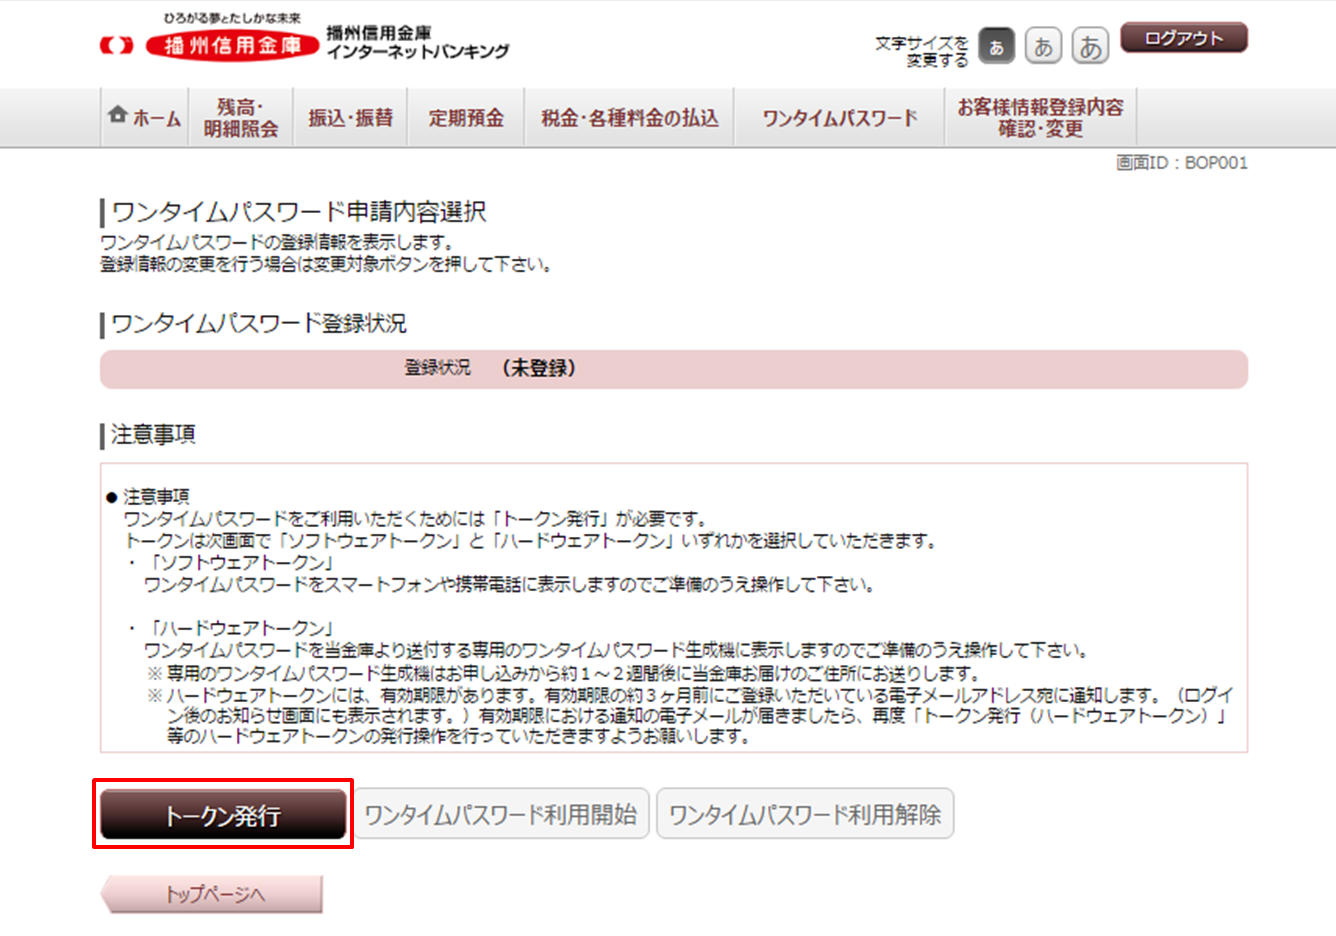 インターネットバンキング ワンタイムパスワード申請画面のイメージ